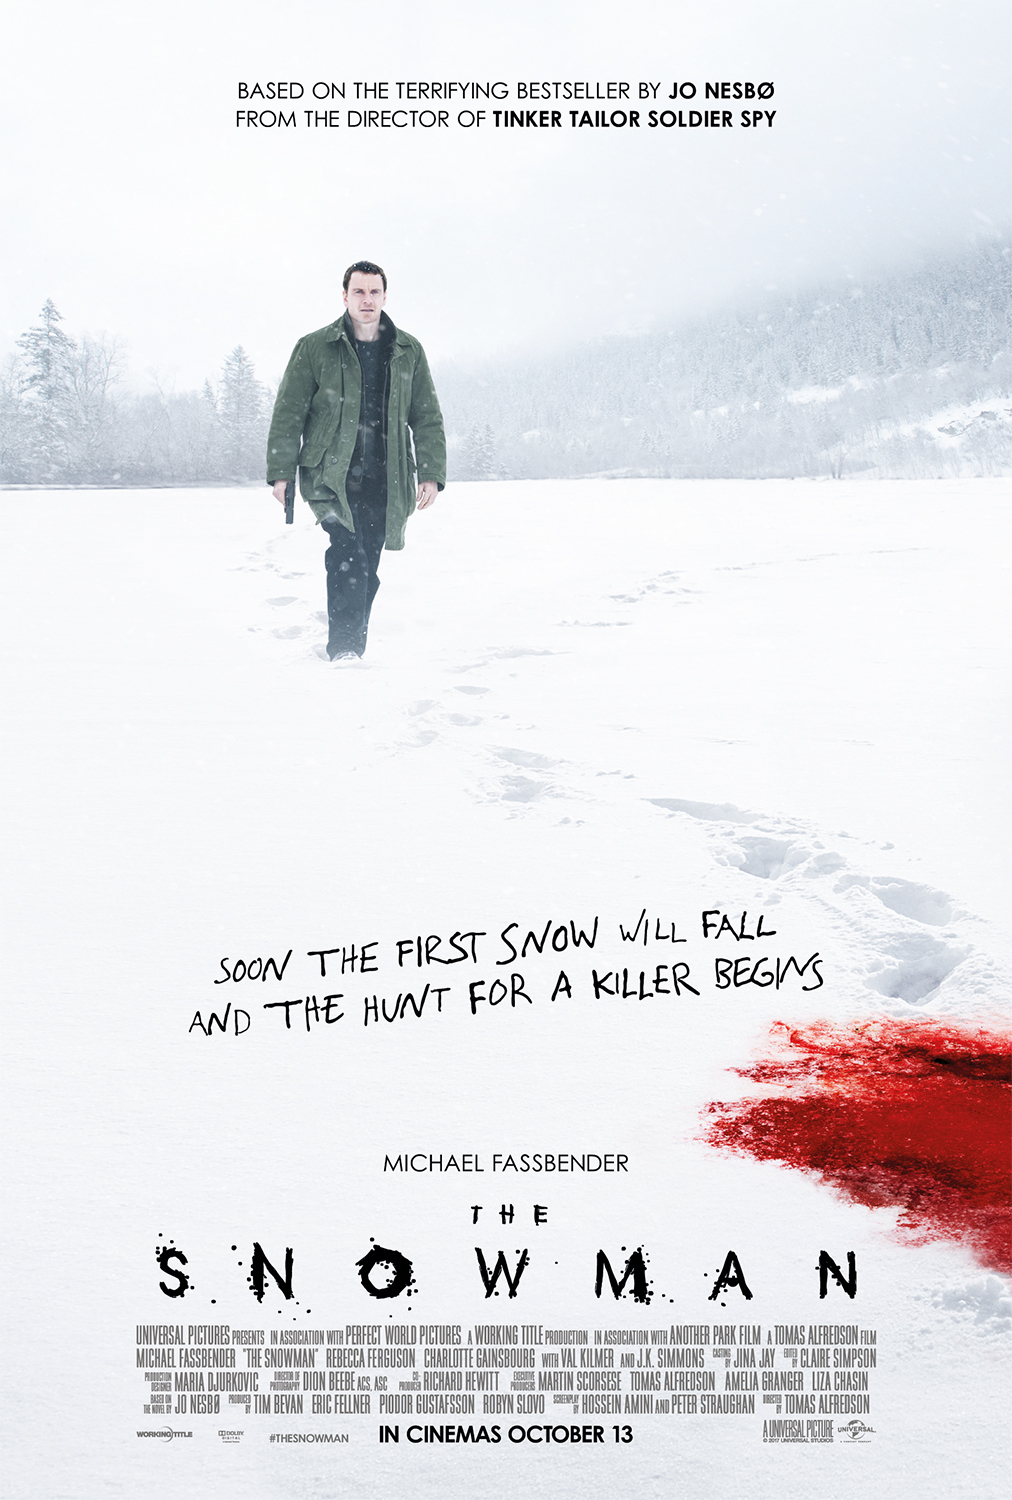 ดูหนังออนไลน์ฟรี THE SNOWMAN (2017) แฮร์รี โฮล กับคดีฆาตกรมนุษย์หิมะ หนังเต็มเรื่อง หนังมาสเตอร์ ดูหนังHD ดูหนังออนไลน์ ดูหนังใหม่